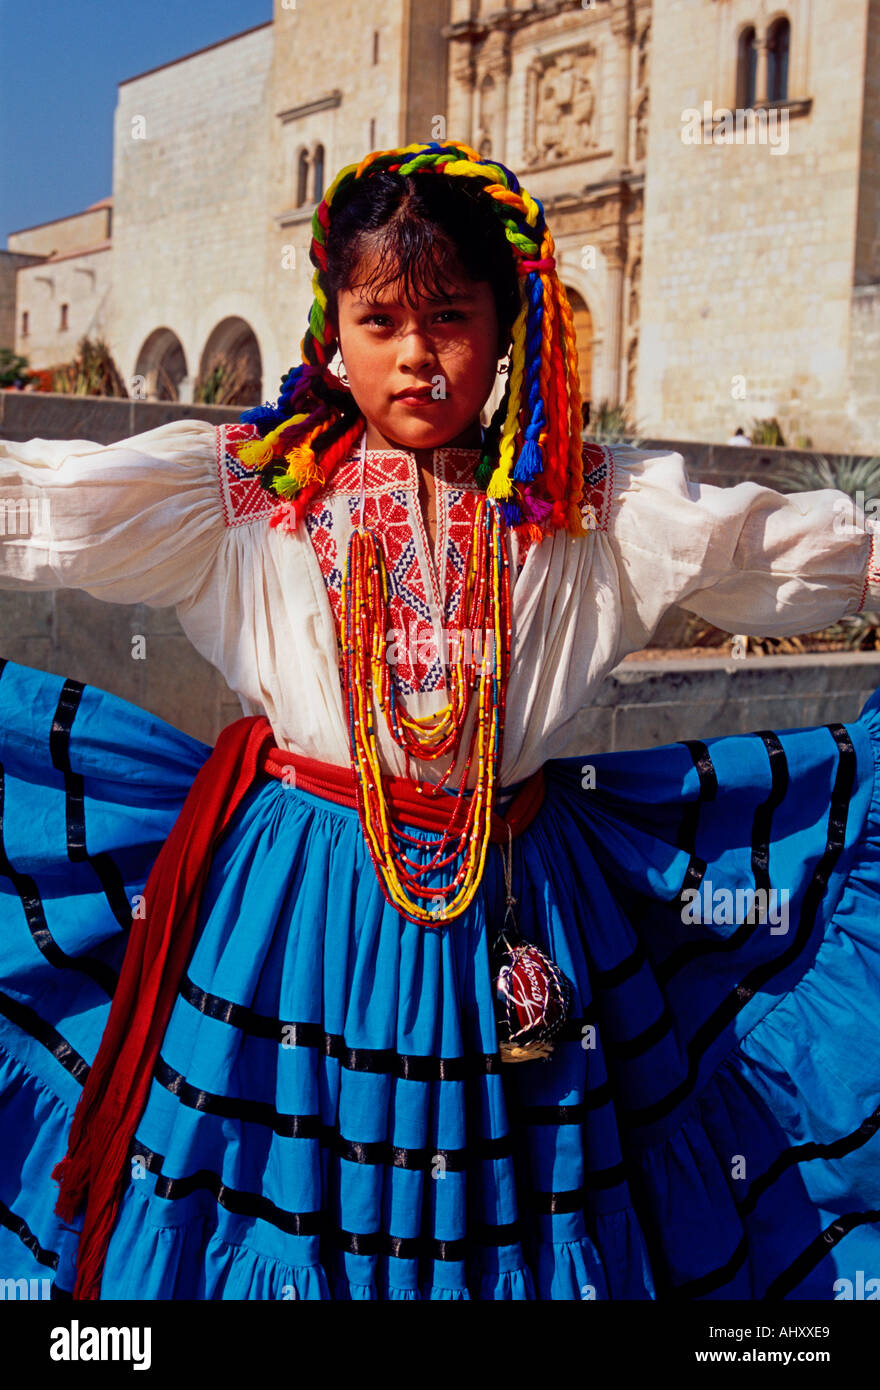 La niña mexicana Mexicana, chica, las murgas de bailarina, retrato, Guelaguetza, Festival, Oaxaca, Oaxaca de Juárez, Oaxaca, México Foto de stock